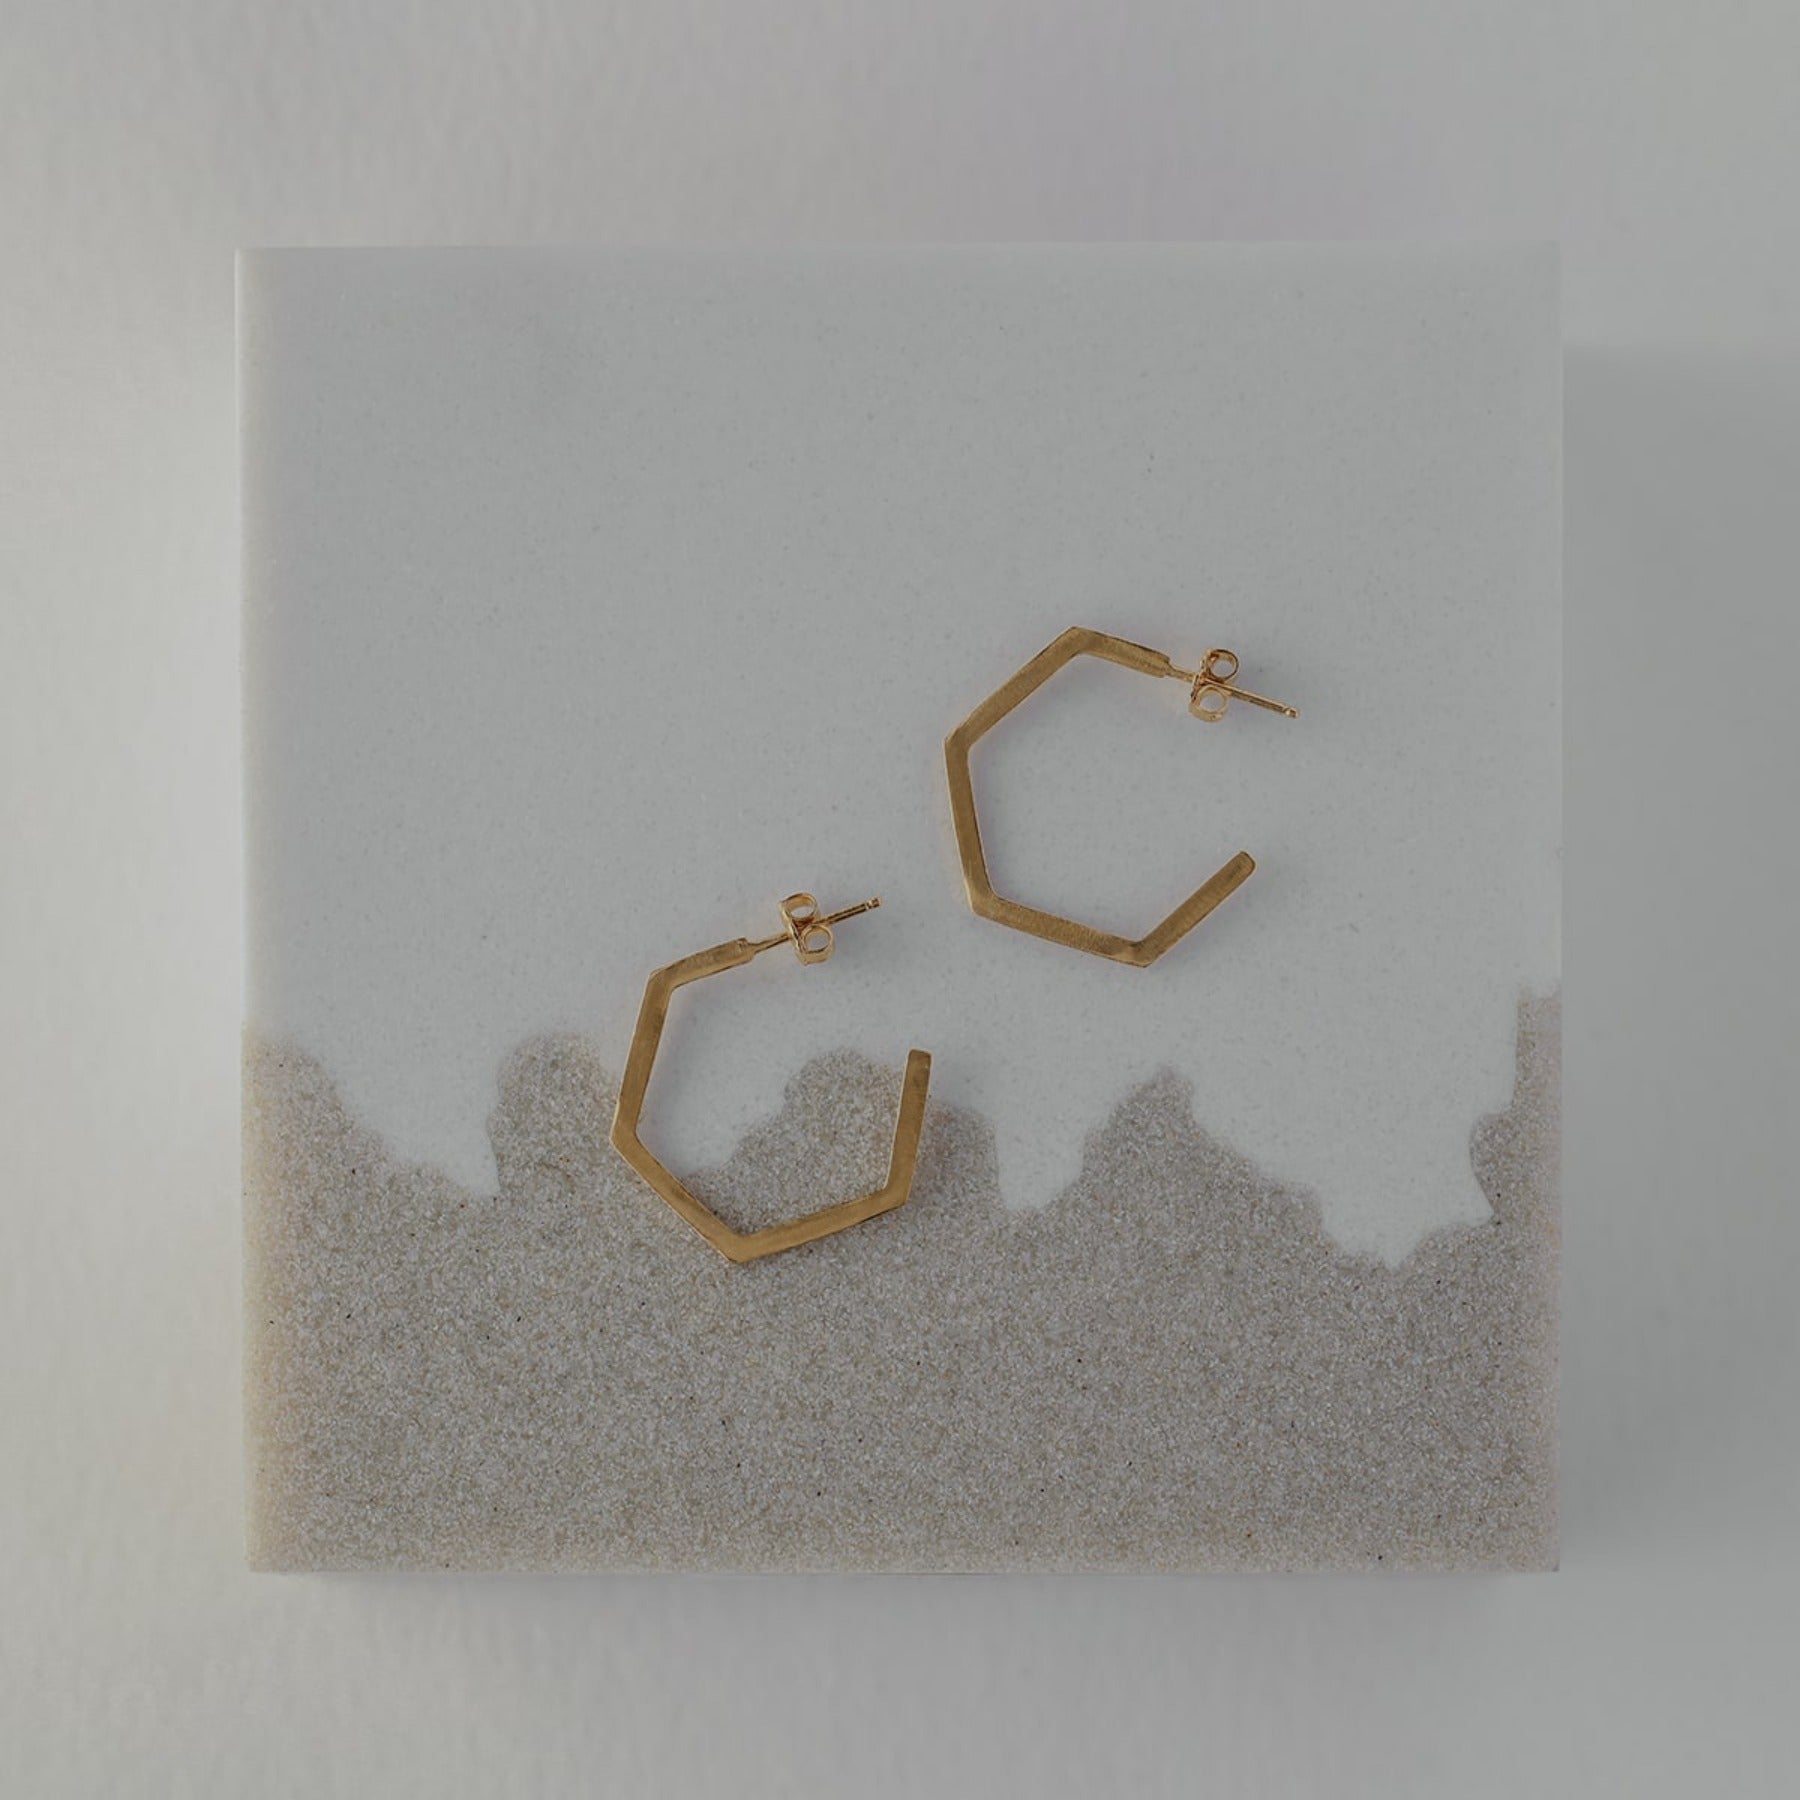 Distressed geometric small hexagon hoop earrings in 18k gold vermeil.